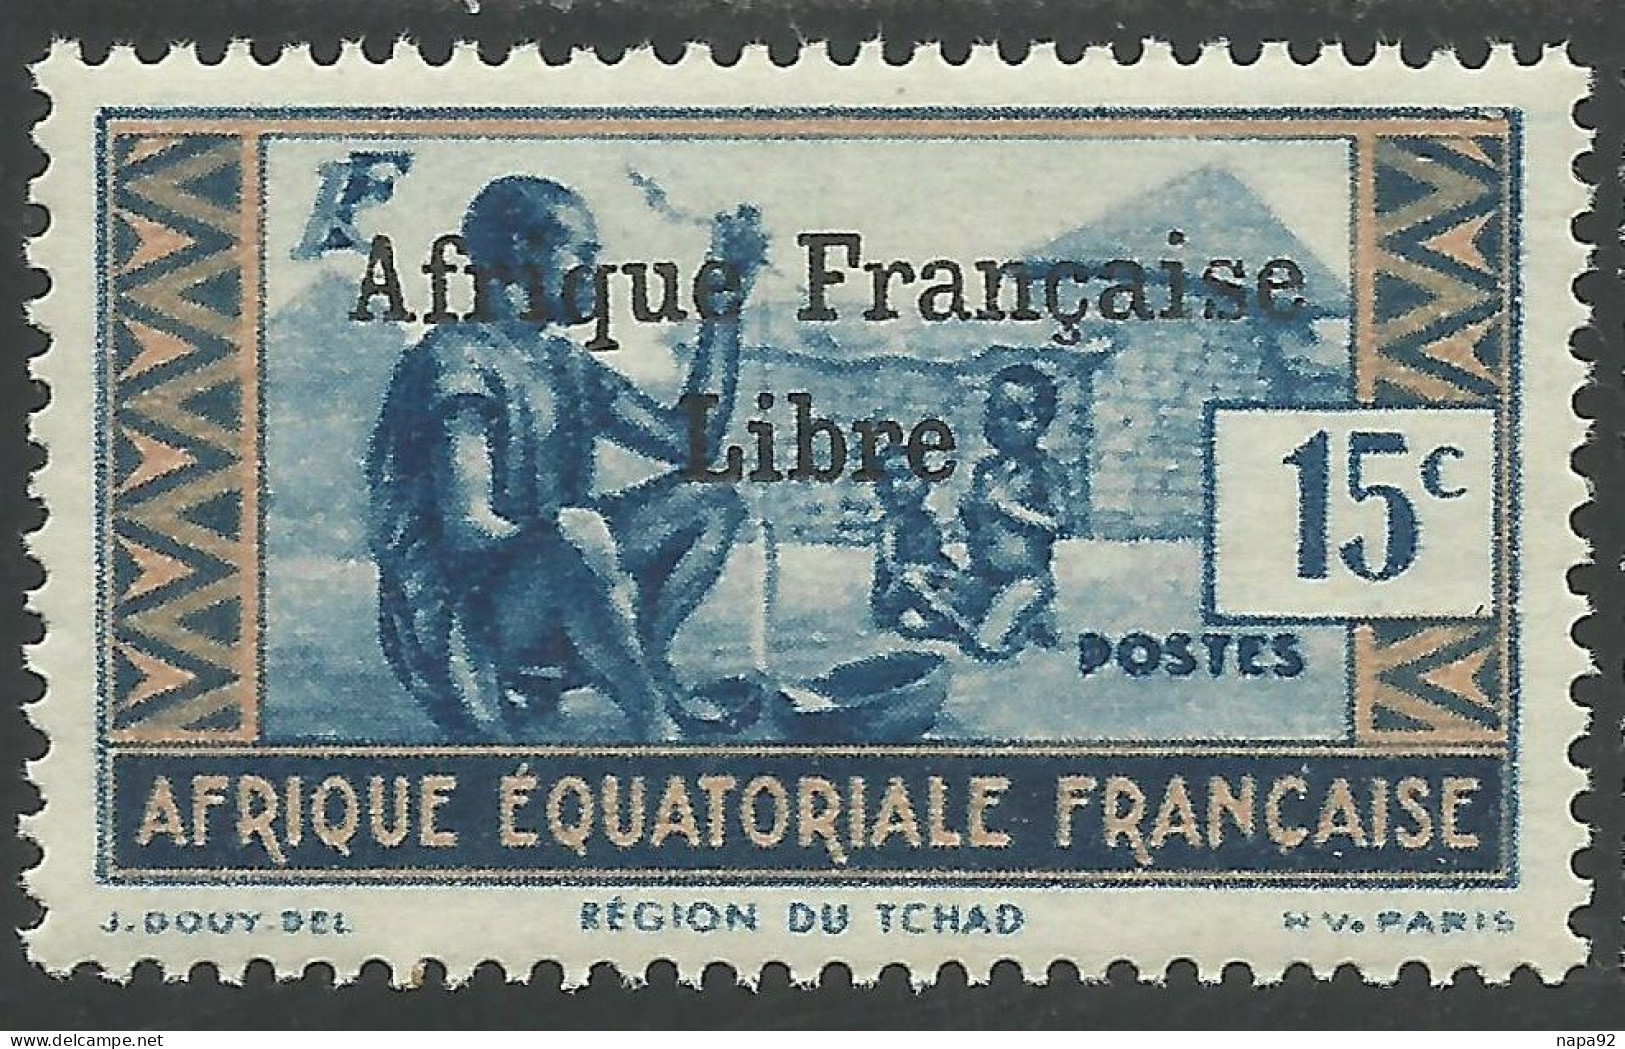 AFRIQUE EQUATORIALE FRANCAISE - AEF - A.E.F. - 1941 - YT 161** - 2ème TIRAGE - Ungebraucht